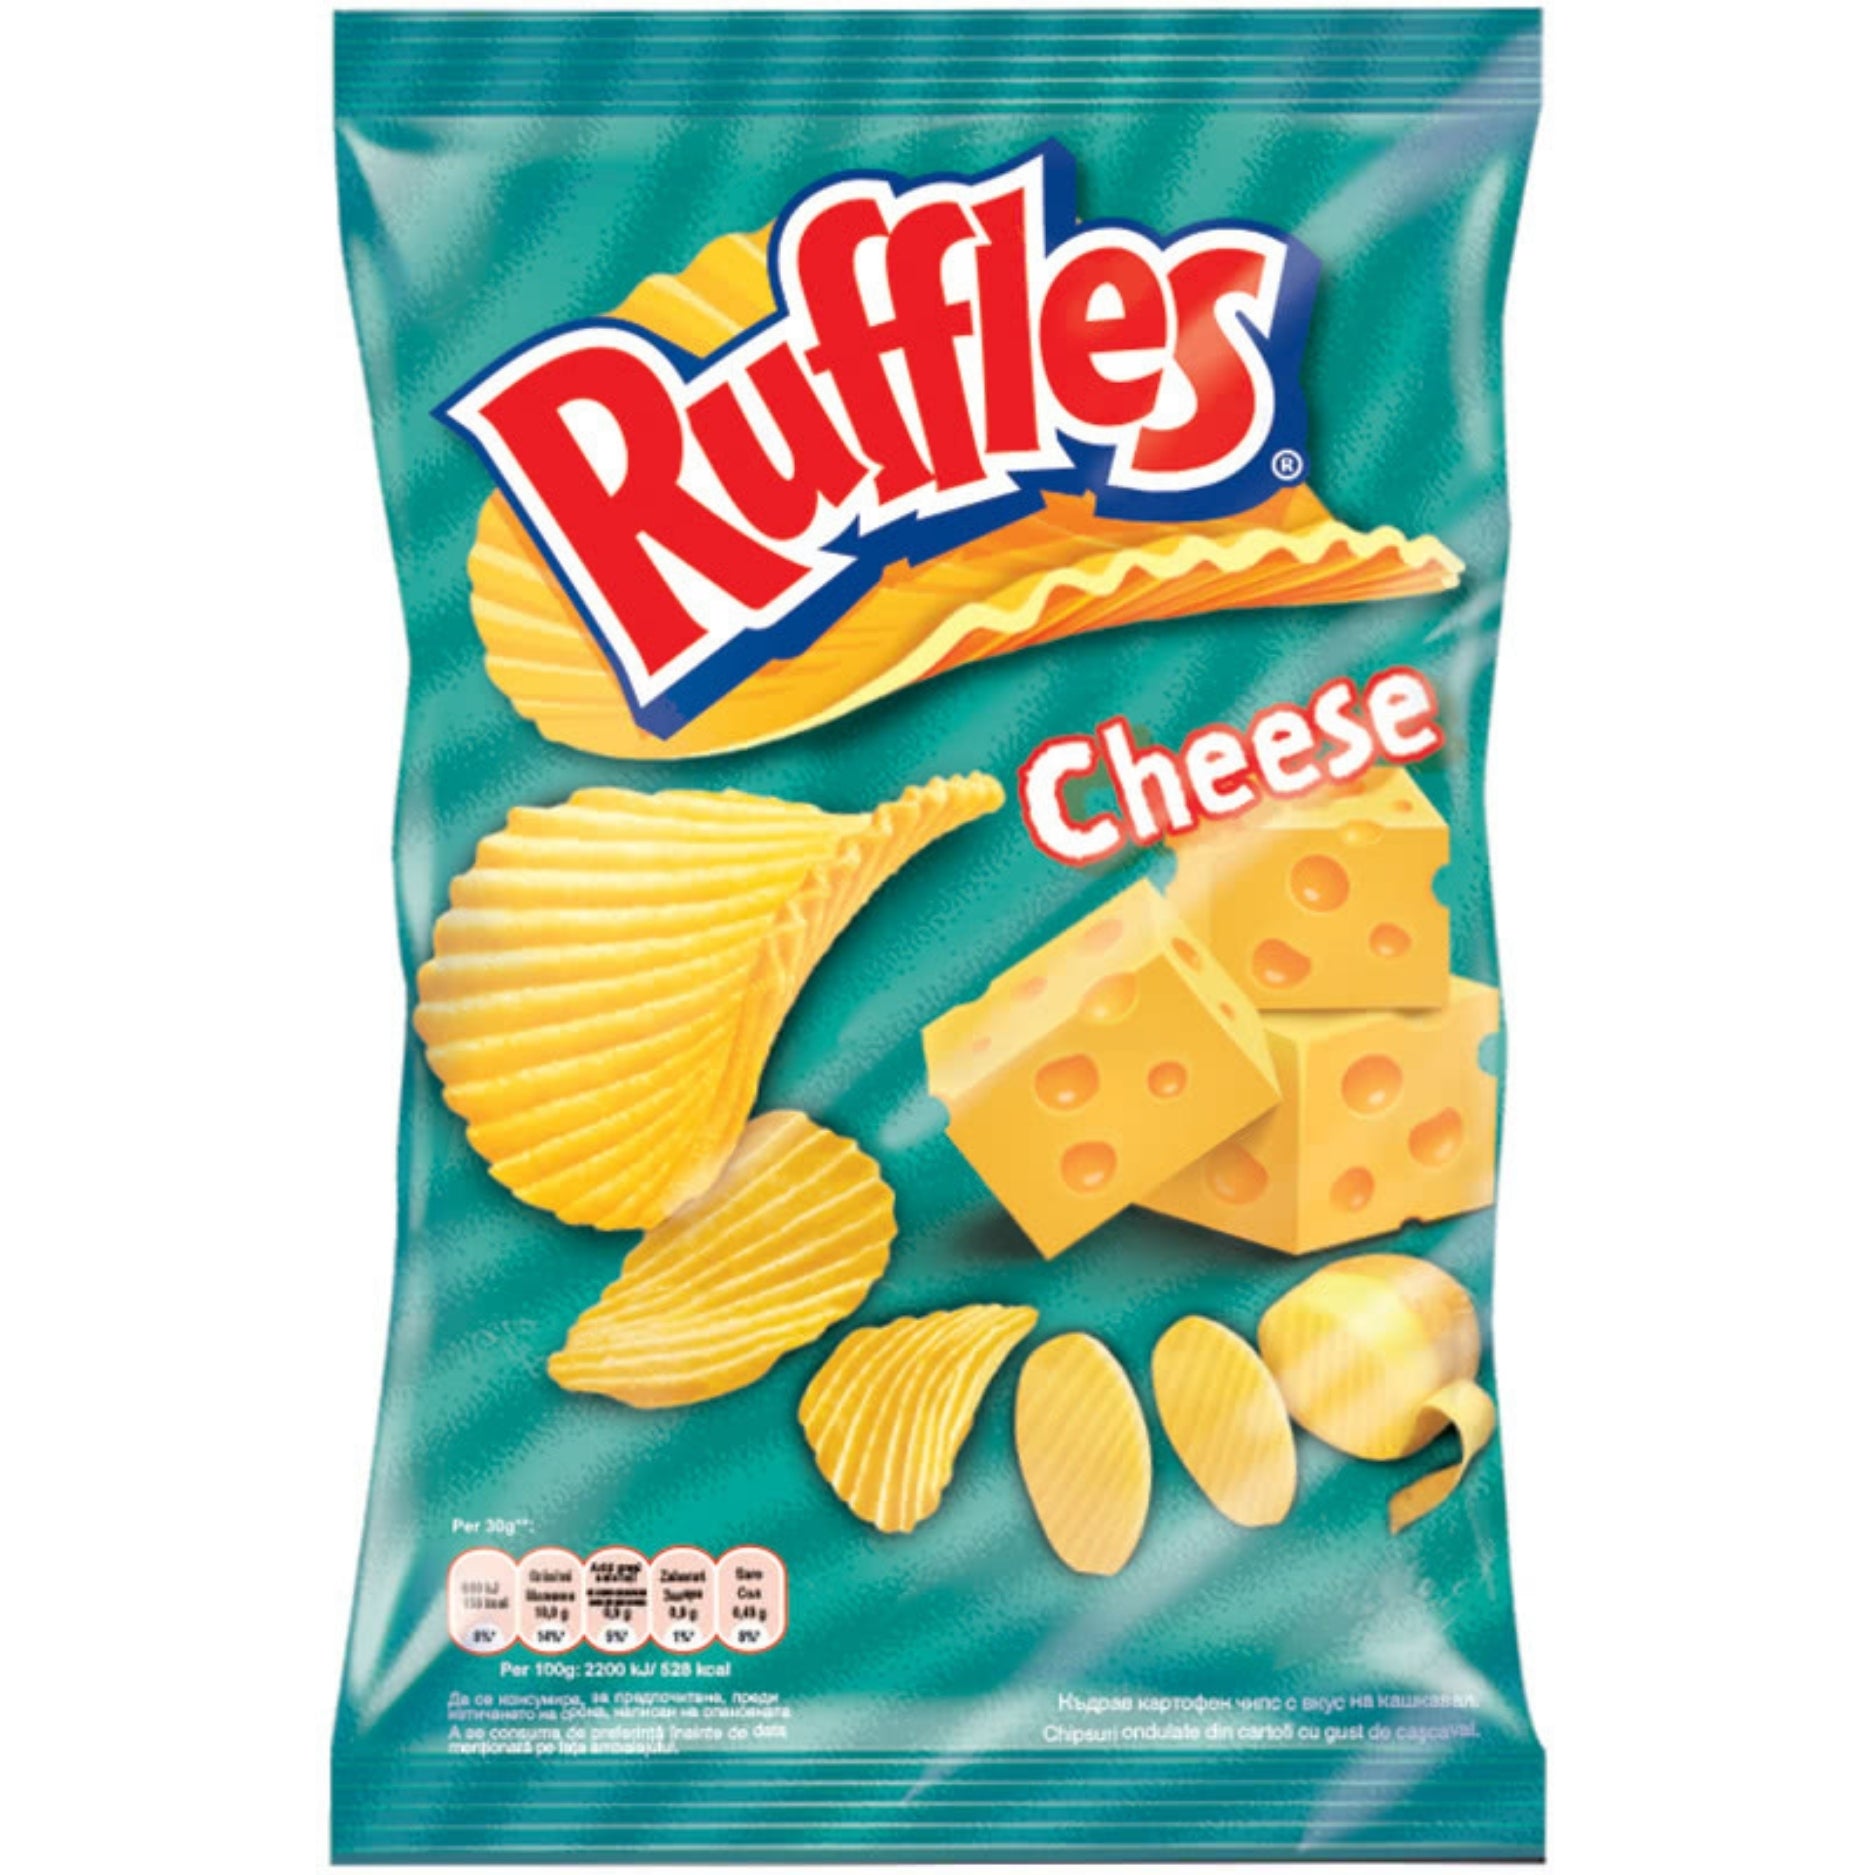 Ruffles Cheese - Bulgaria - 155g